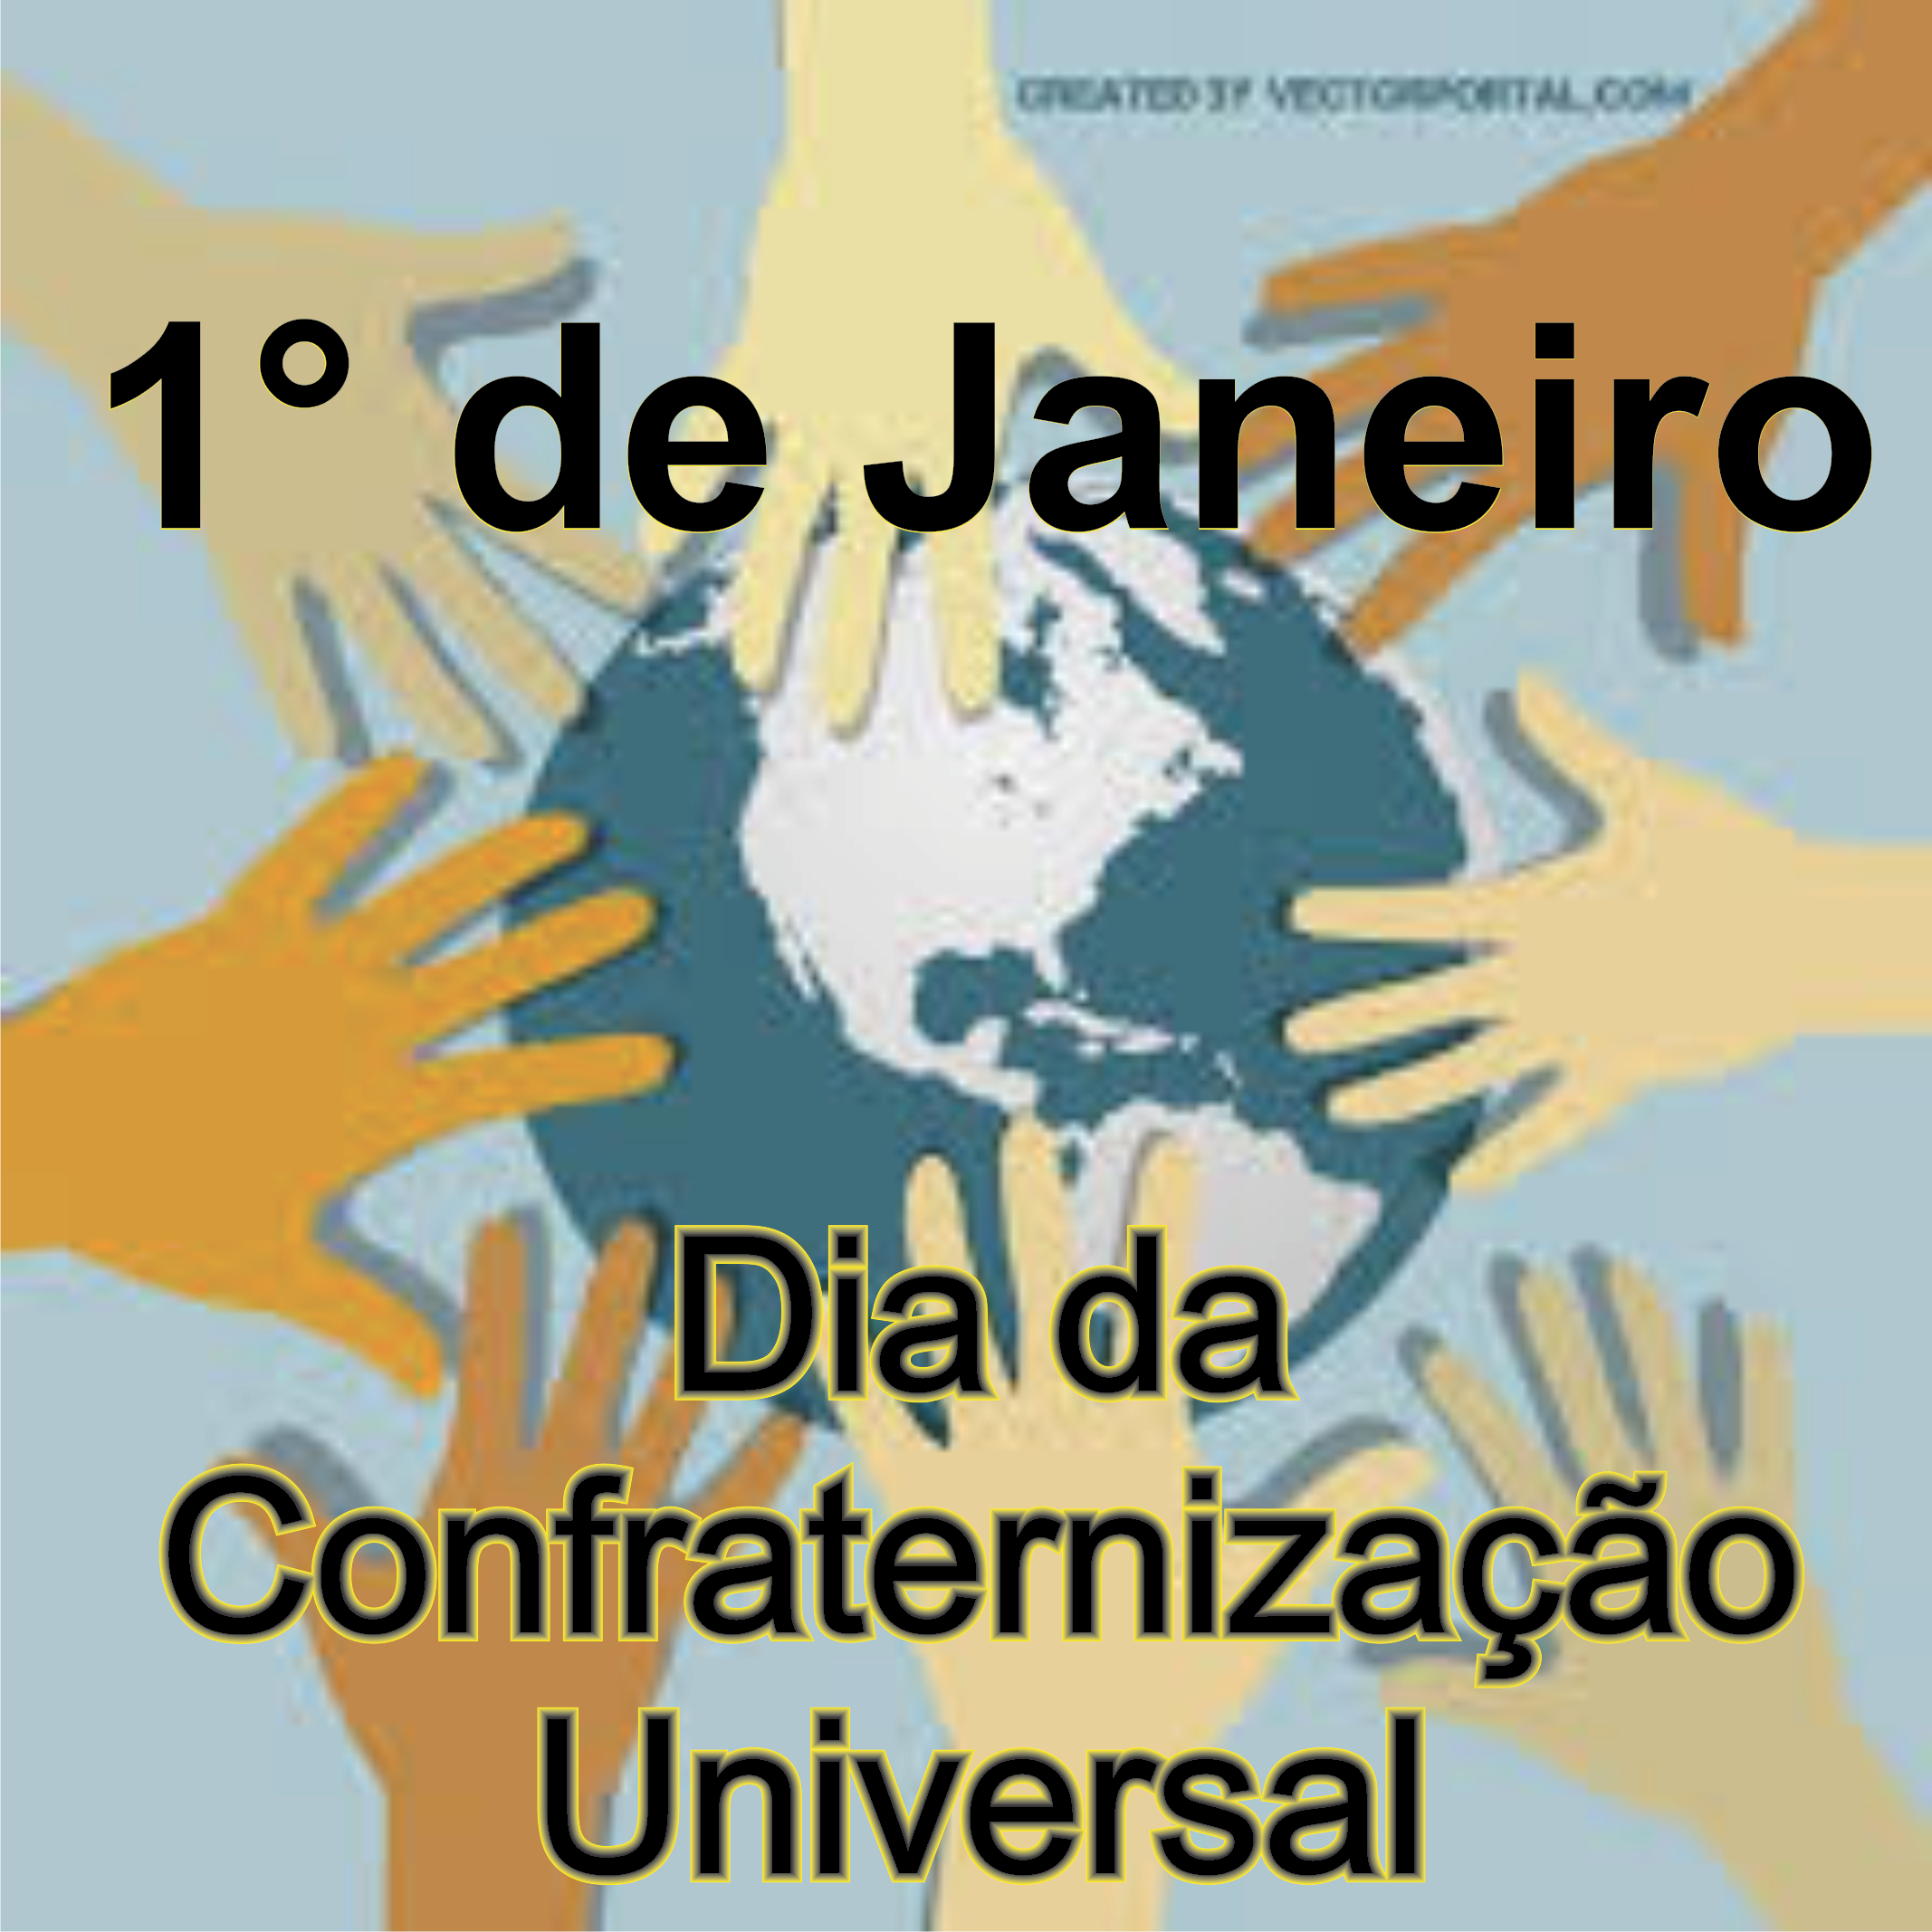 Imagem com mãos diferentes tocando o globo terrestre e os dizeres: 1° de Janeiro Dia da Confraternização Universal